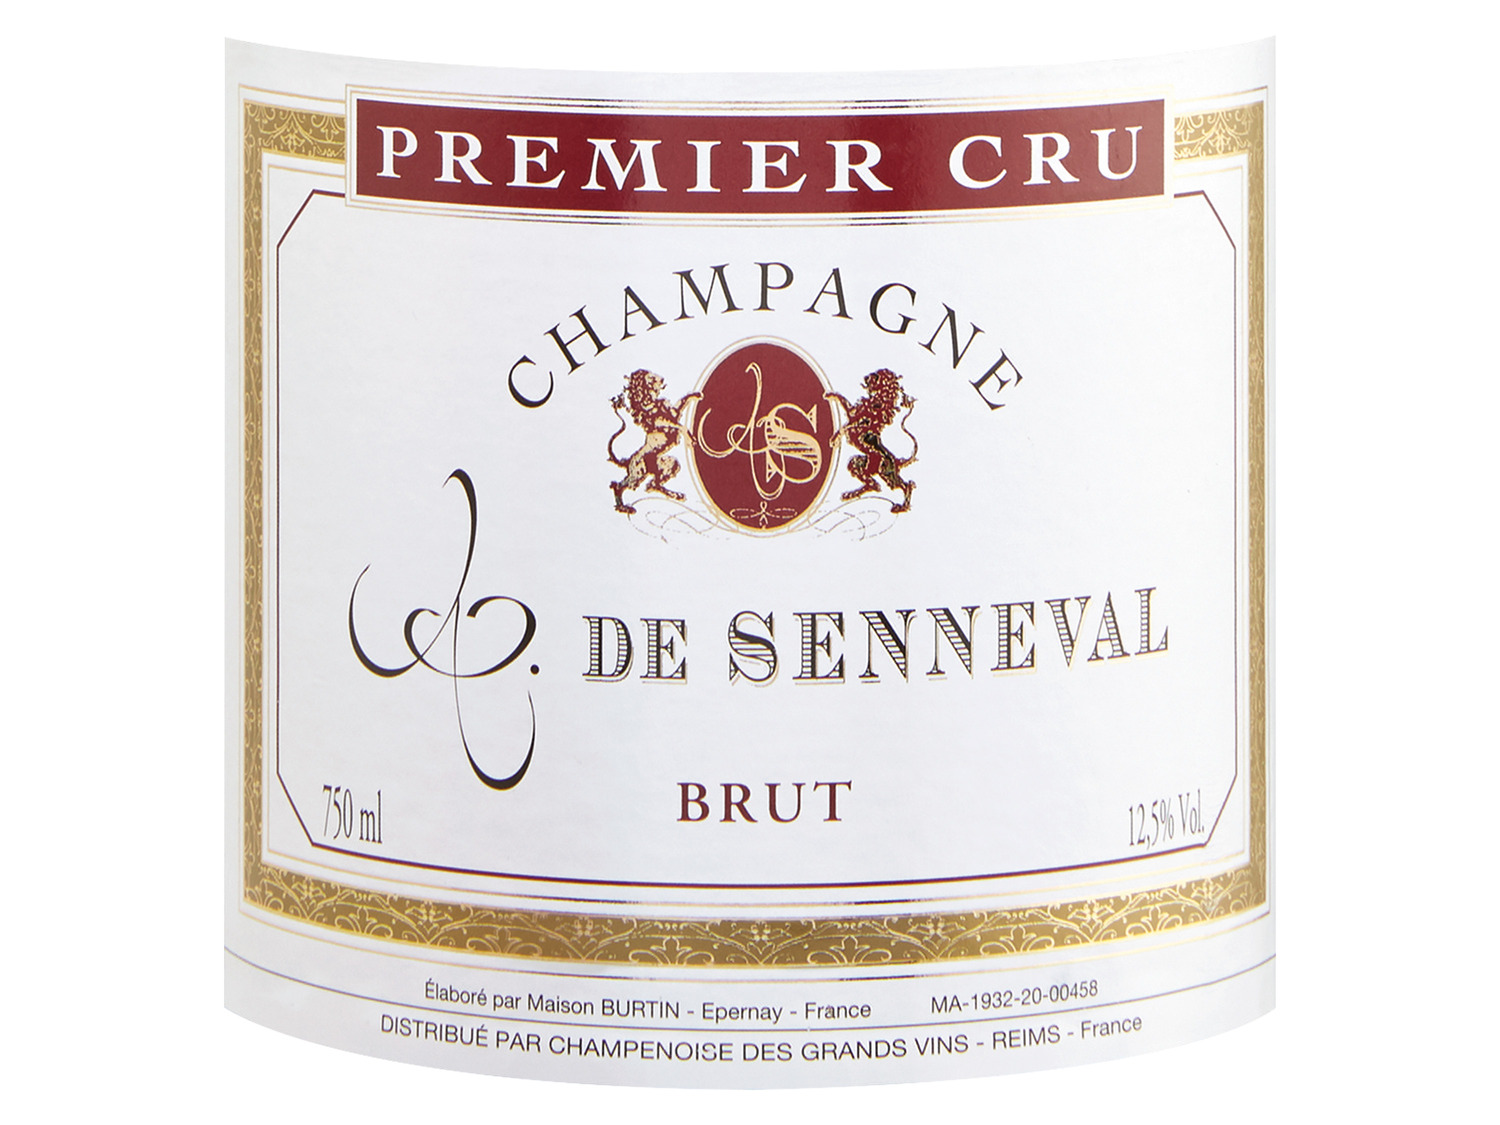 brut, Cru Senneval de Champagner Comte Premier 2011